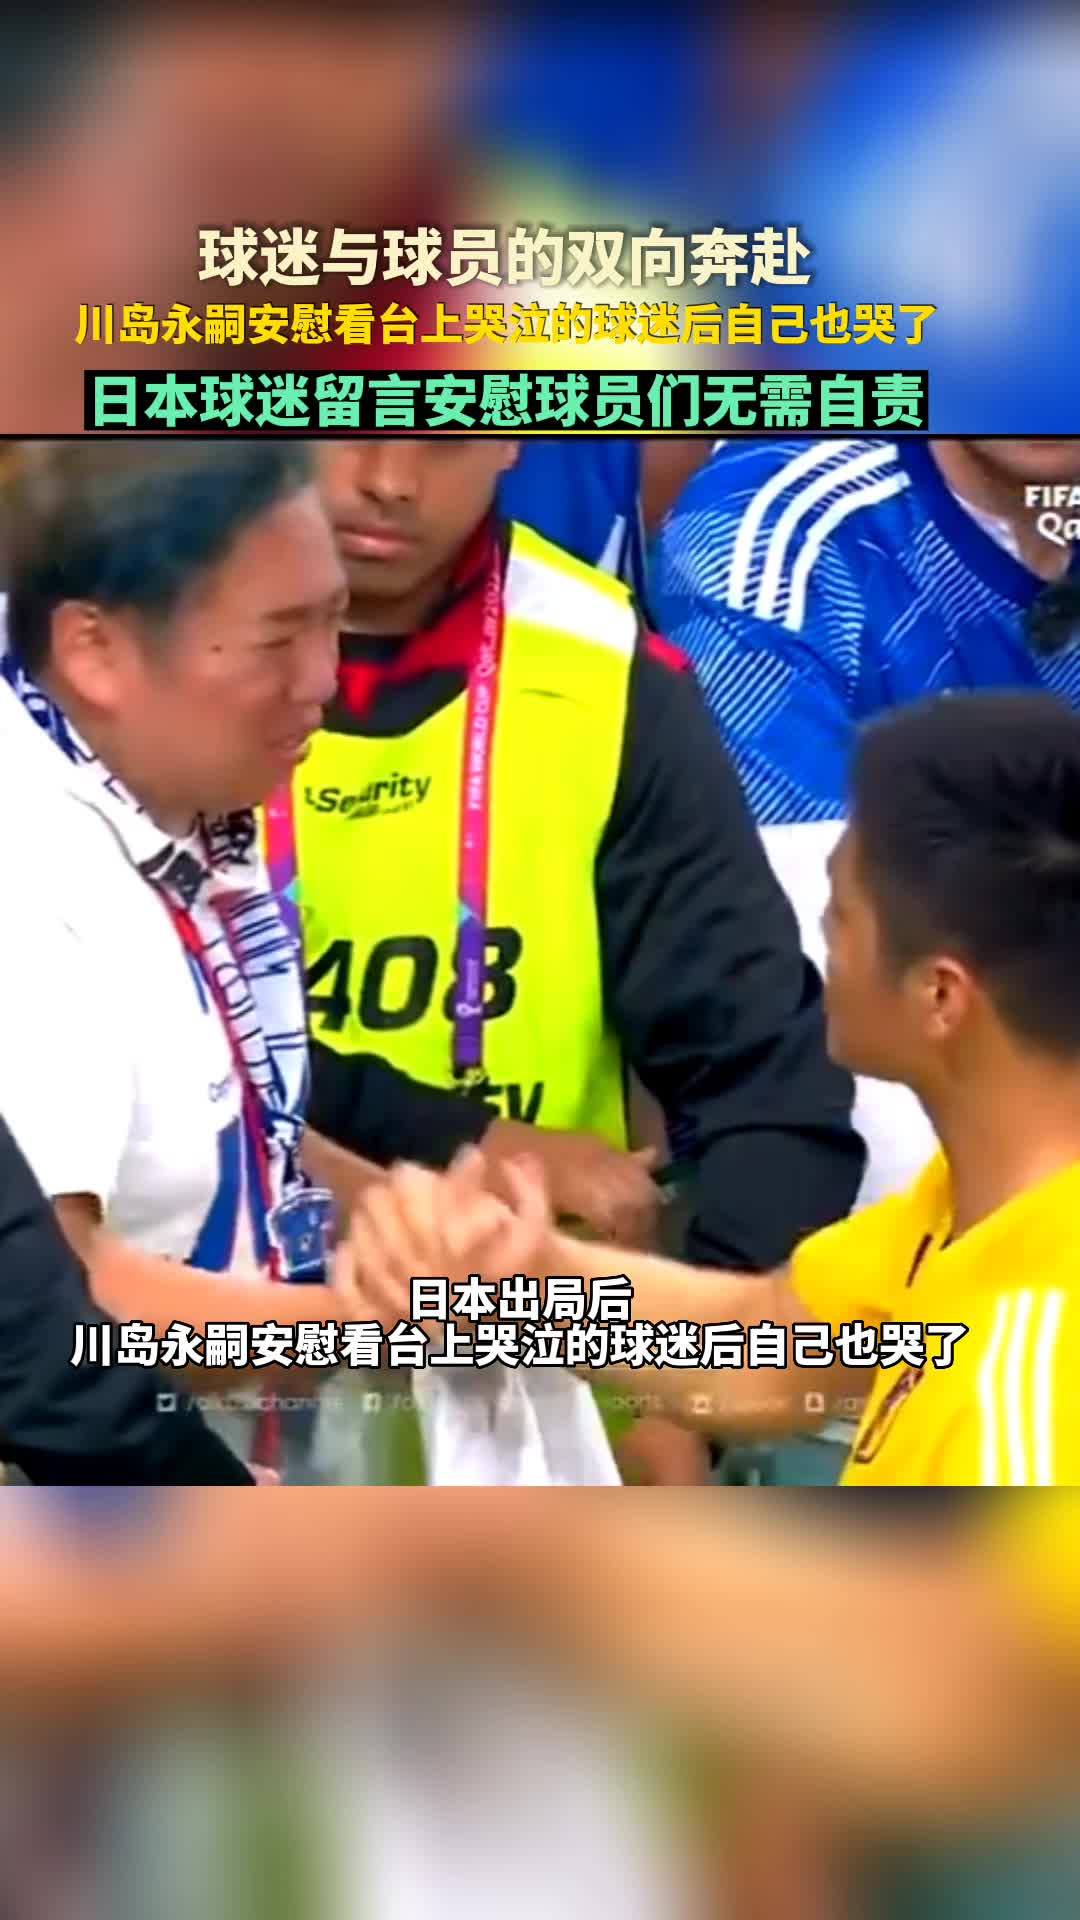 日本出局后 川岛永嗣安慰看台上哭泣的球迷后自己也哭了